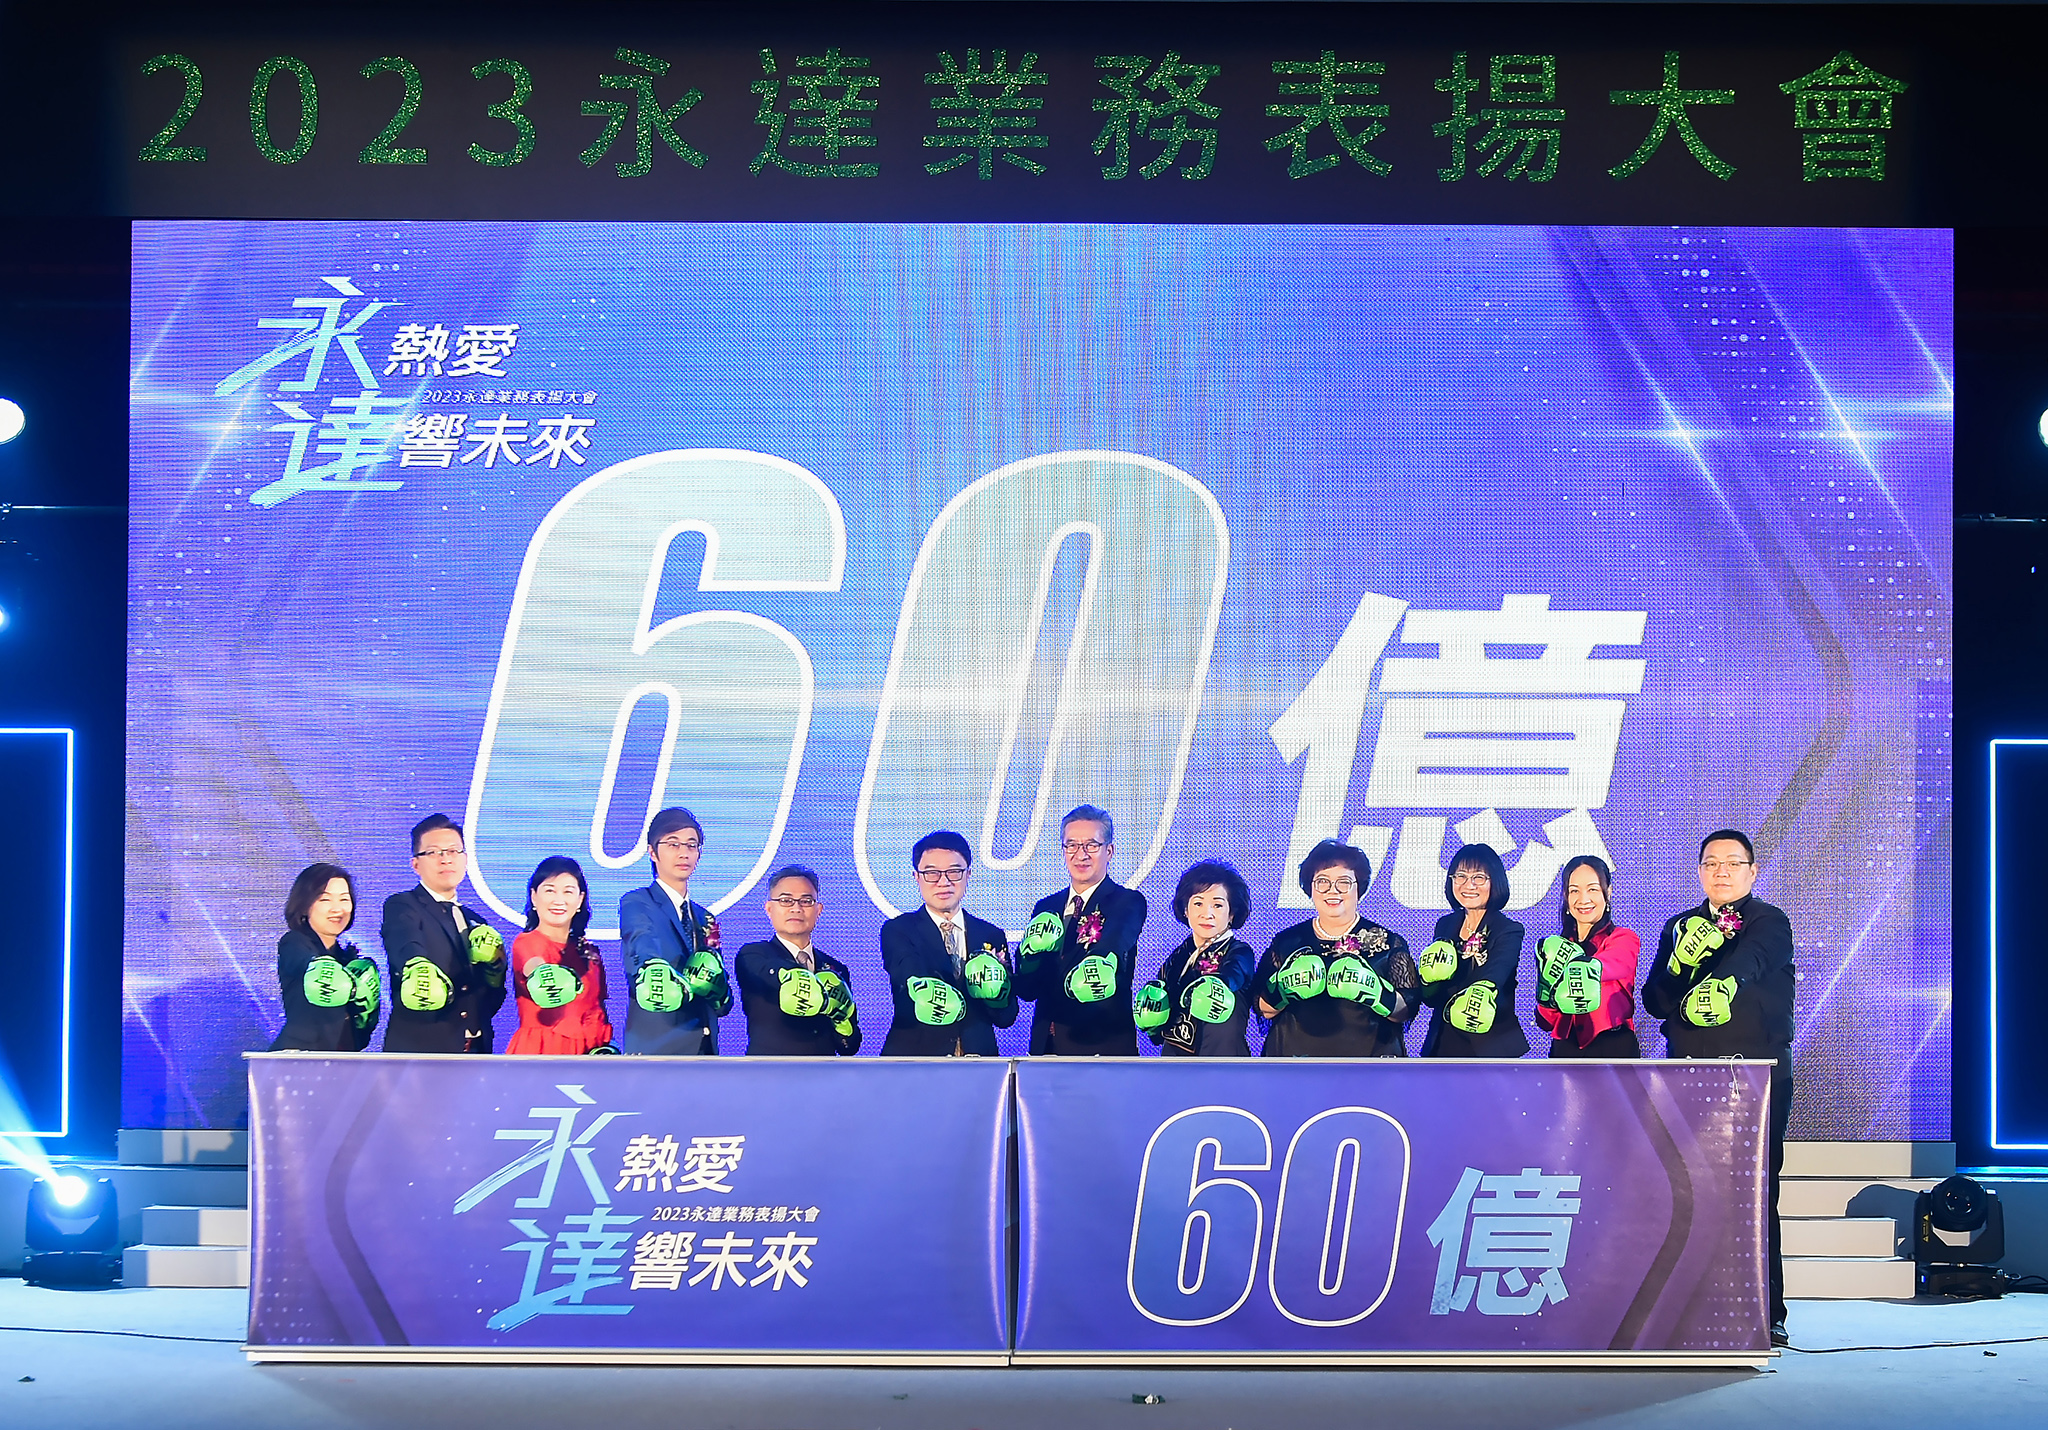 吳文永董事長（左6）與陳慶鴻總經理（右6）擊出充滿信心的一拳，引領業務副總們喊出2023年新契約保費目標60億元（含躉繳）。